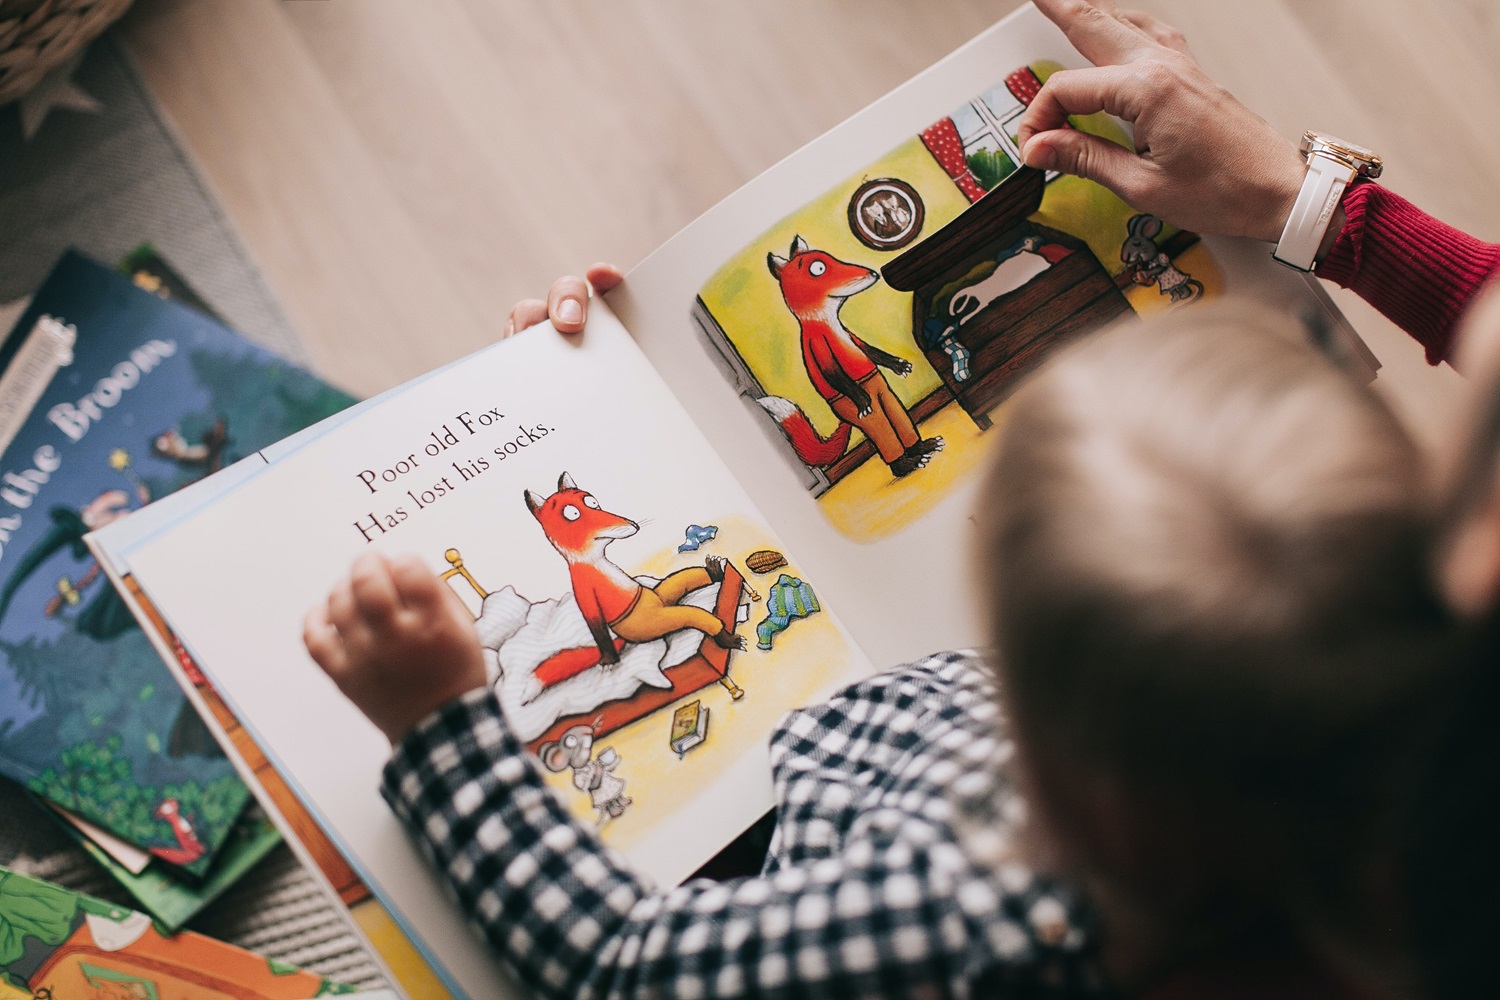 Knygų skaitymo nauda: vaiko teisių gynėja pataria, kaip išmintingai spręsti tėvystės iššūkius